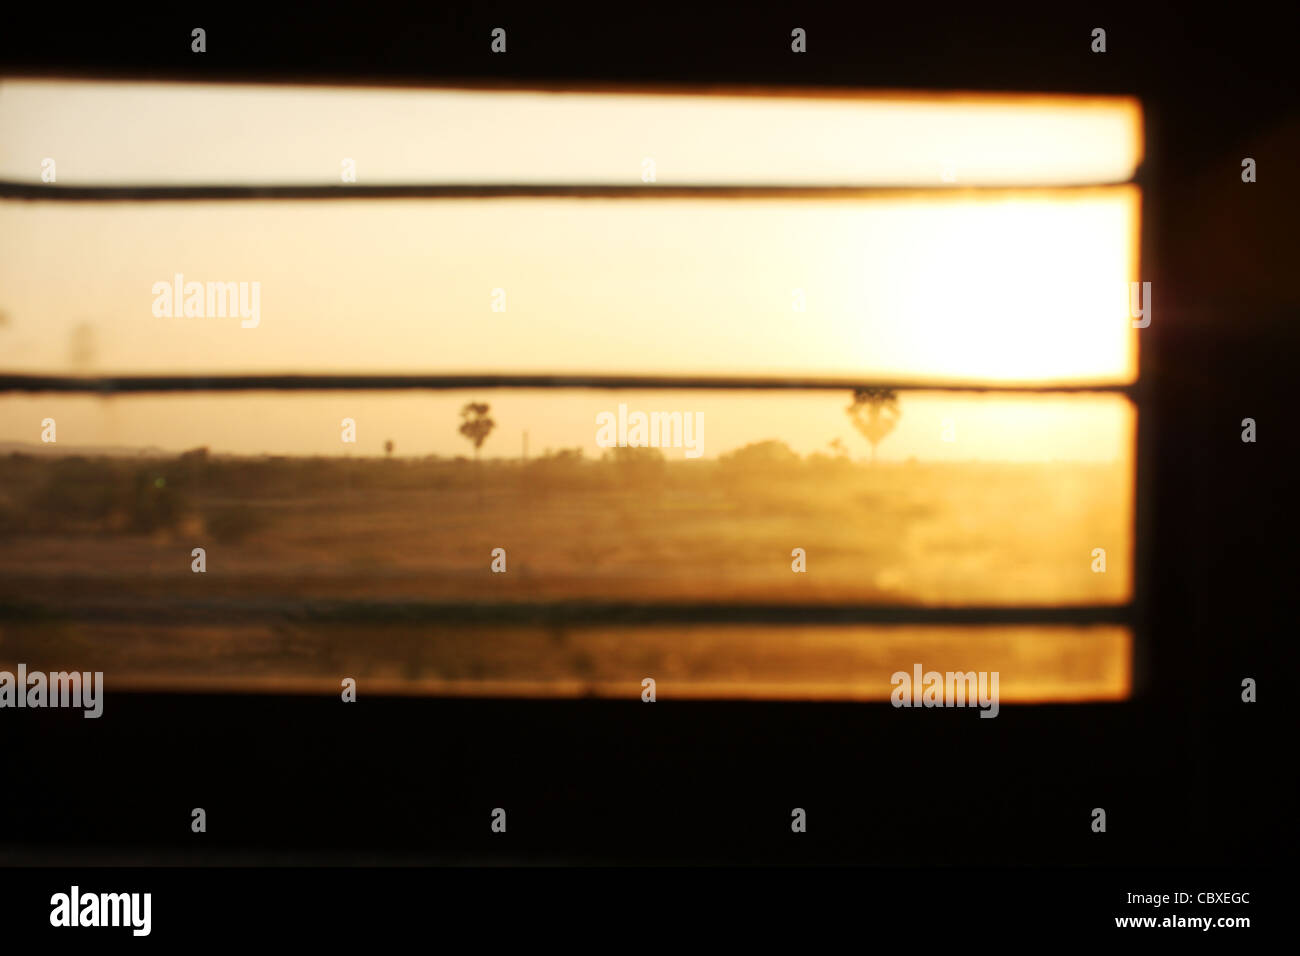 Ansicht einer untergehenden Sonne durch ein indischer Zug Fenster. Dieses Bild wurde gefangen genommen, während der Reise durch Rajasthan. Stockfoto